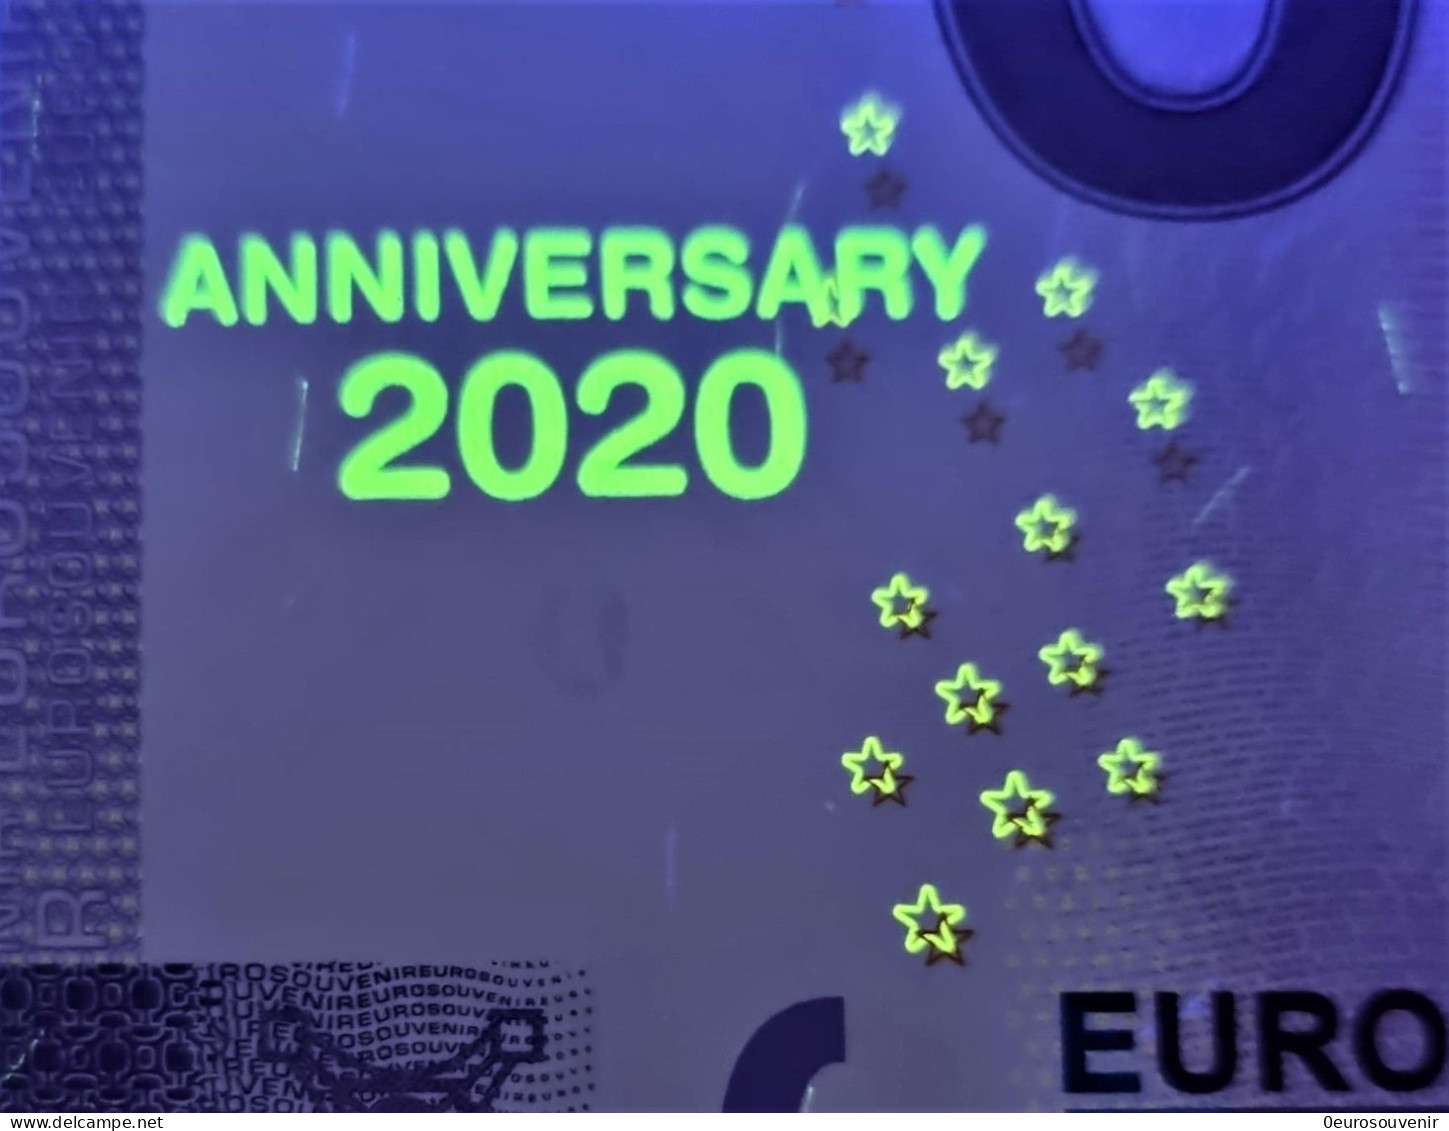 0-Euro ZEJG / XEJG 2020-13 Fehldruck SCHLOSS BURG - ANGRIFF DER SCHWEDEN Set NORMAL+ANNIVERSARY - Essais Privés / Non-officiels